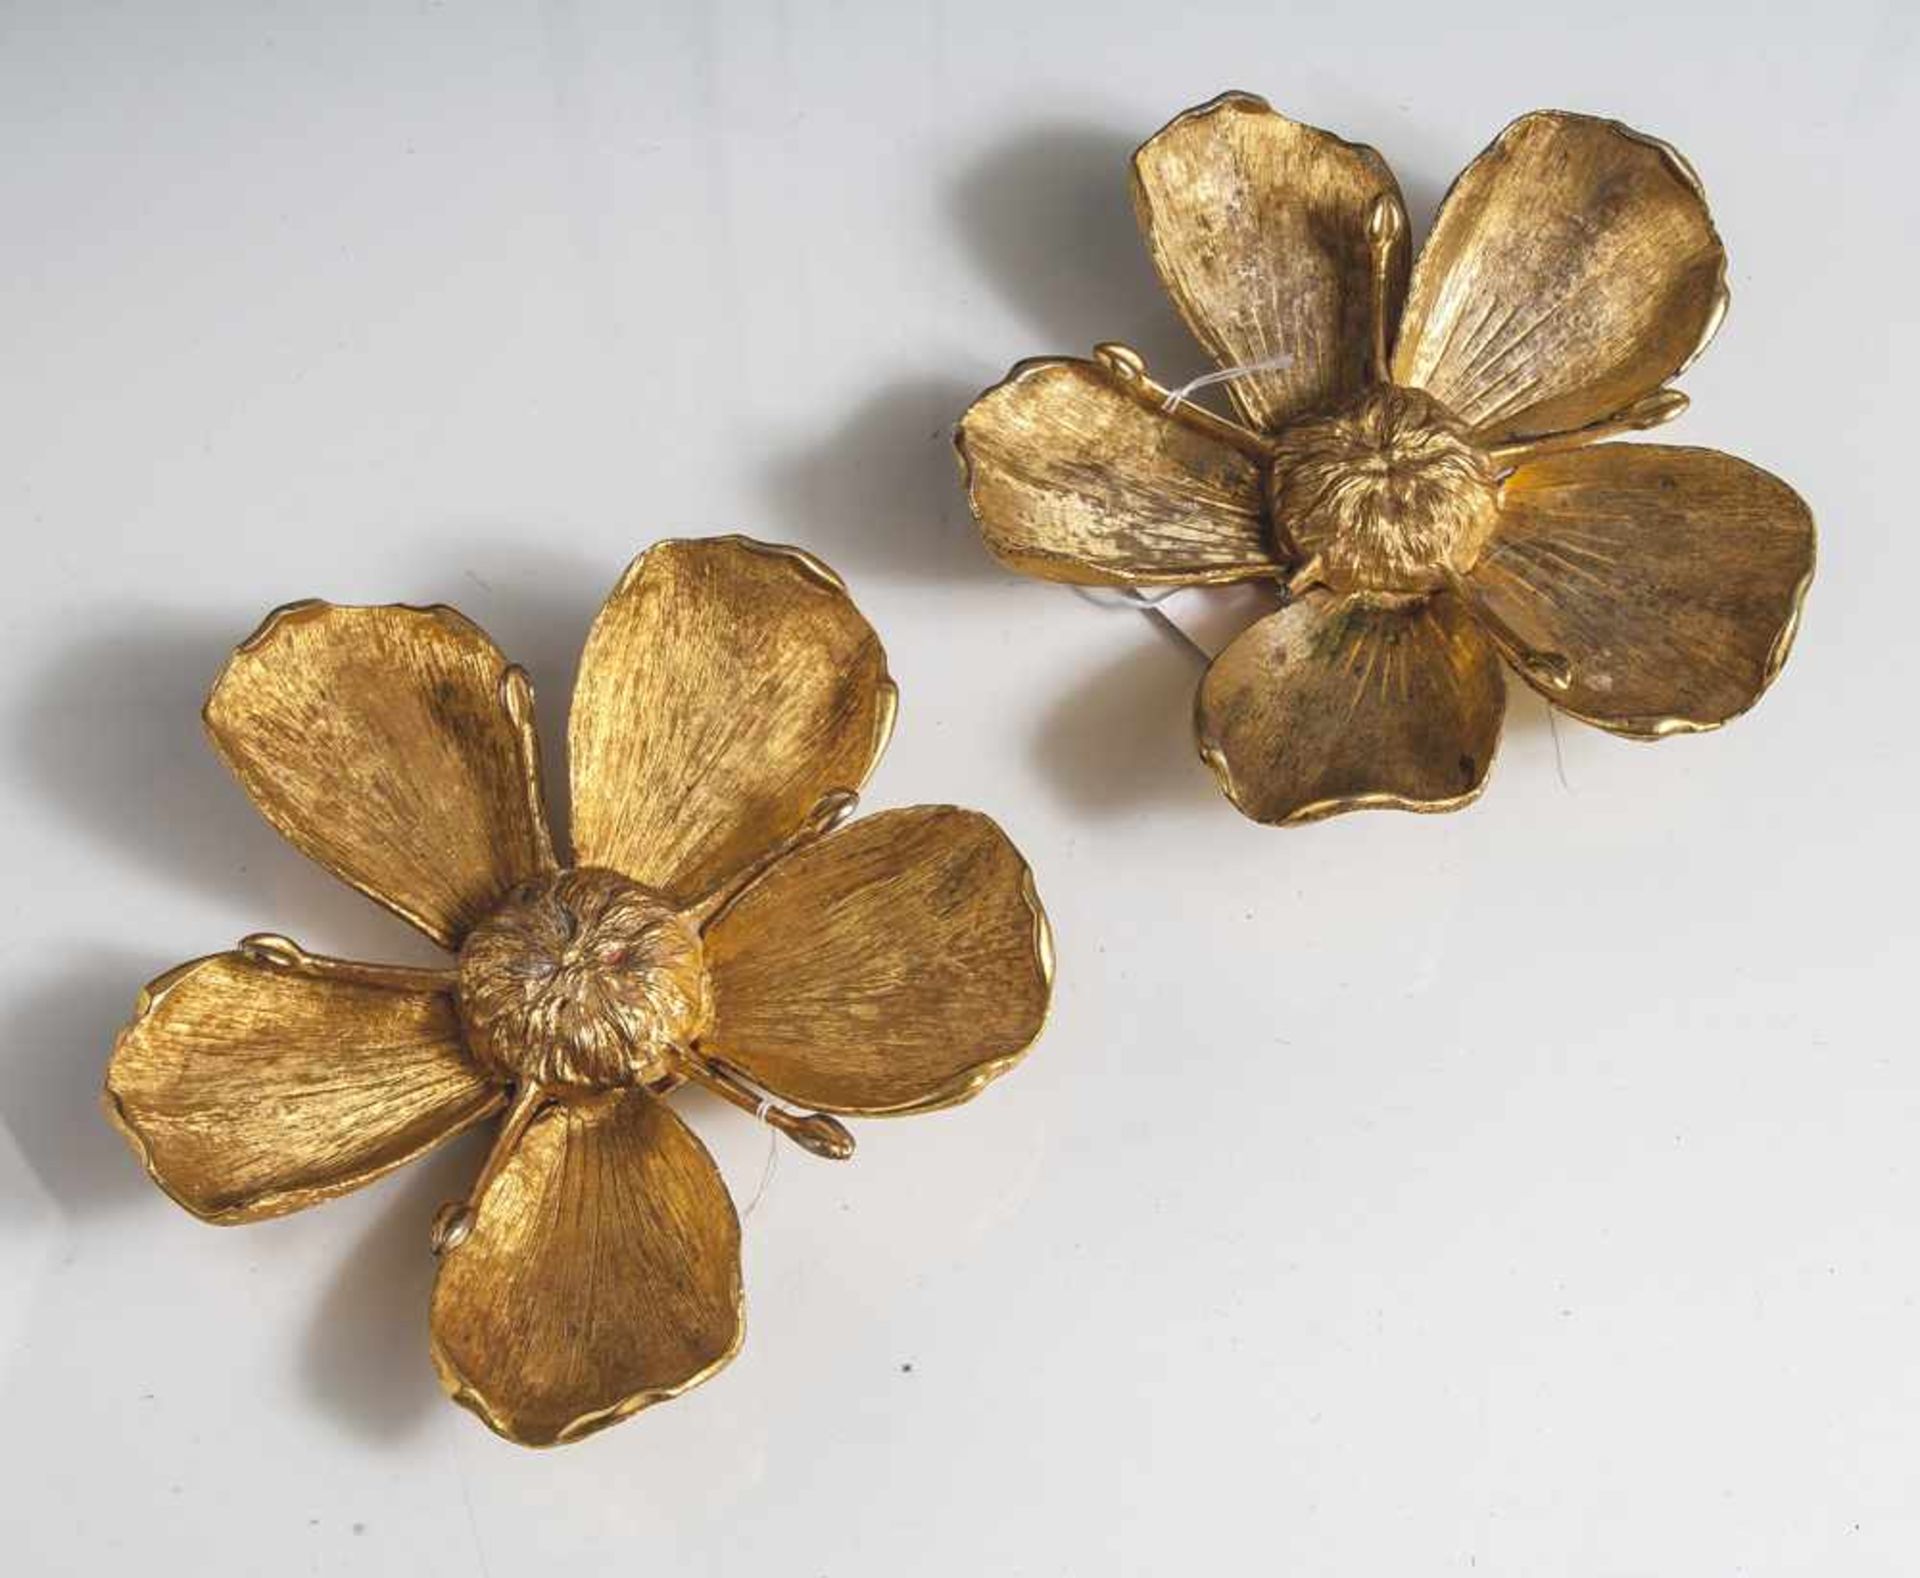 Paar blütenförmige Aschenschalen, Metallguß, vergoldet, die jeweils 5 Blütenblätter zum Herausziehen